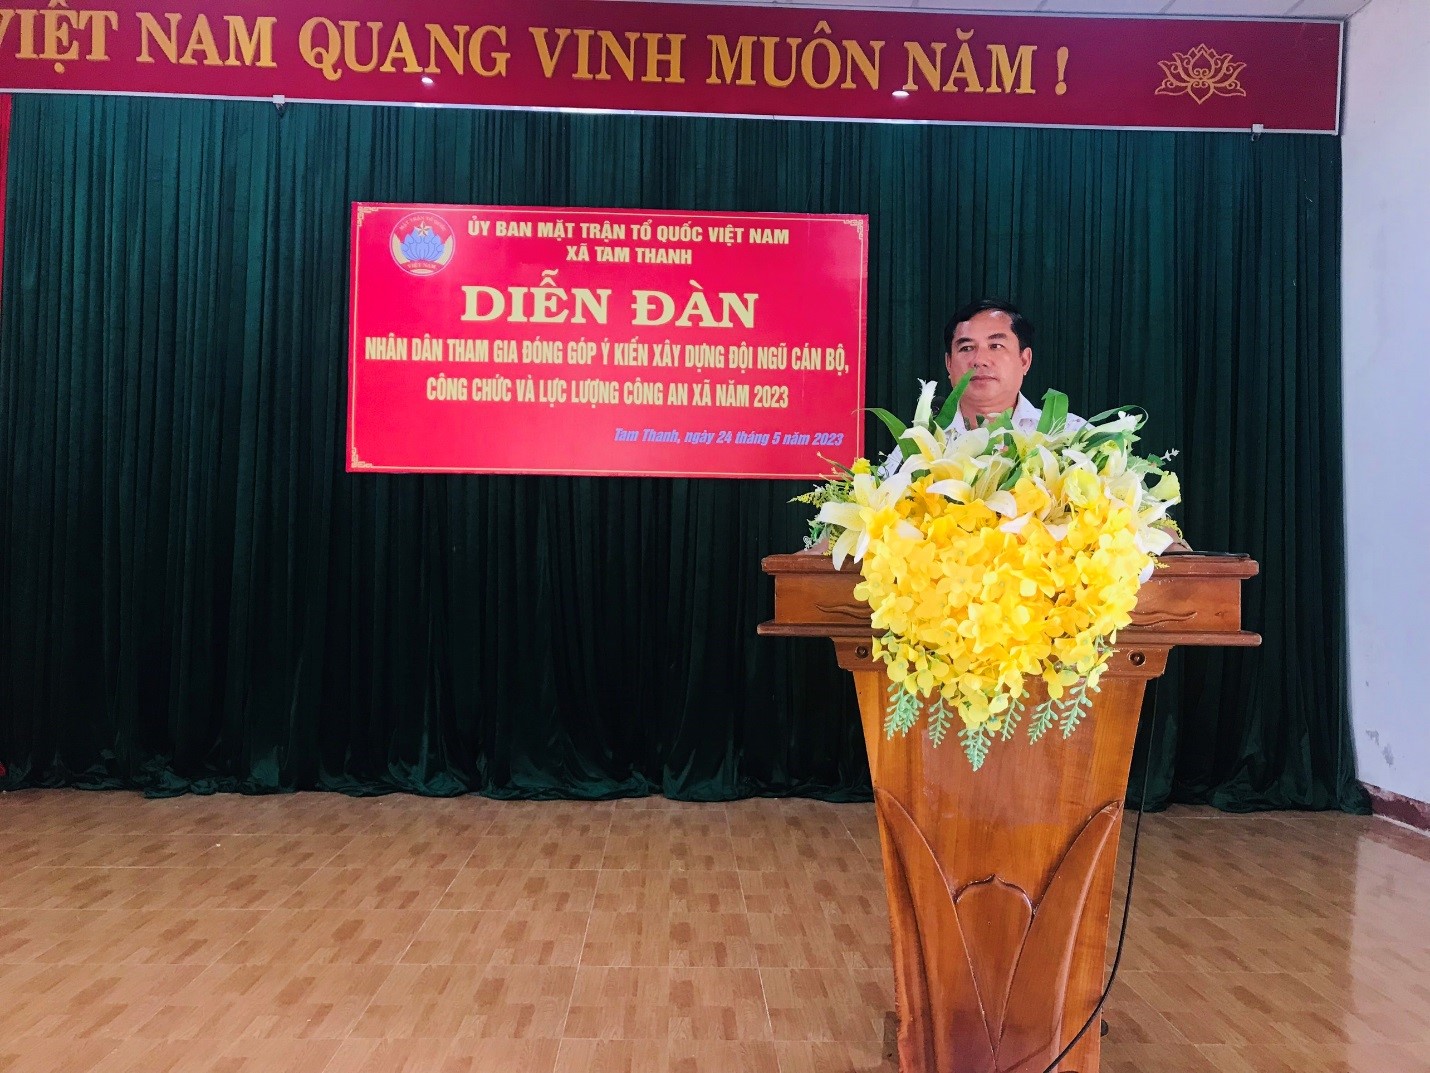 Ông Nguyễn Hồng Lực - Chủ tịch Uỷ ban MTTQ Việt Nam xã, chủ trì buổi đối thoại